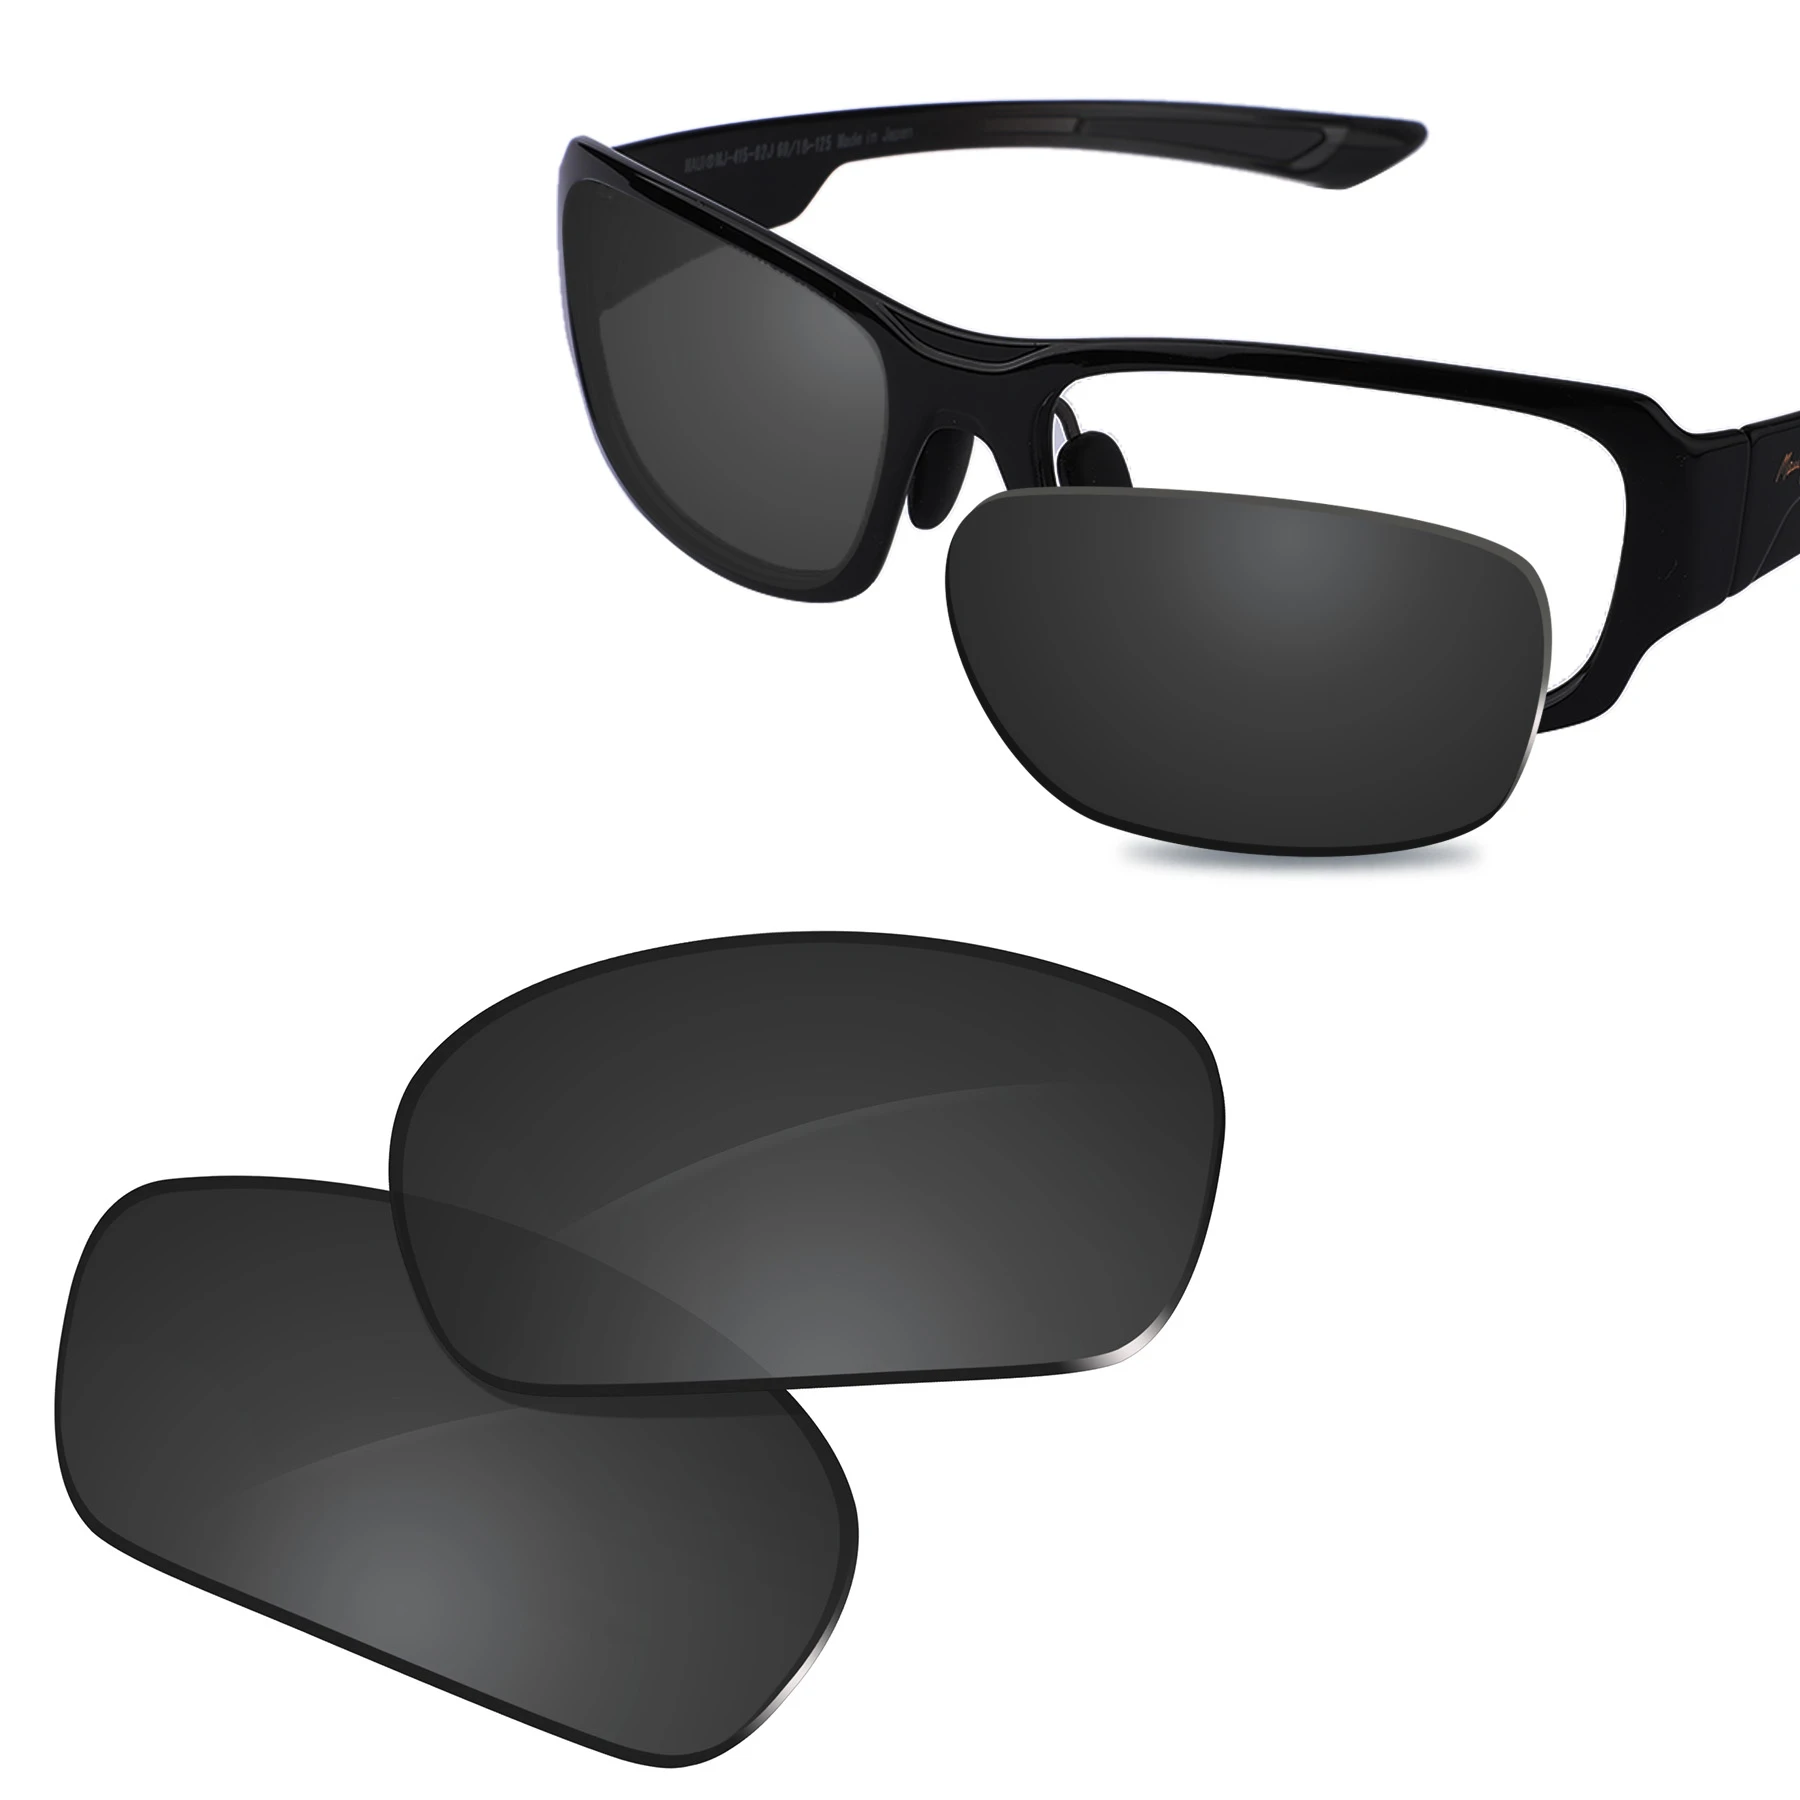 Glintbay Lentes de repuesto polarizadas de nuevo rendimiento para gafas de sol Maui, Jim, Bamboo Forest, MJ415, colores|Gafas Accesorios| - AliExpress